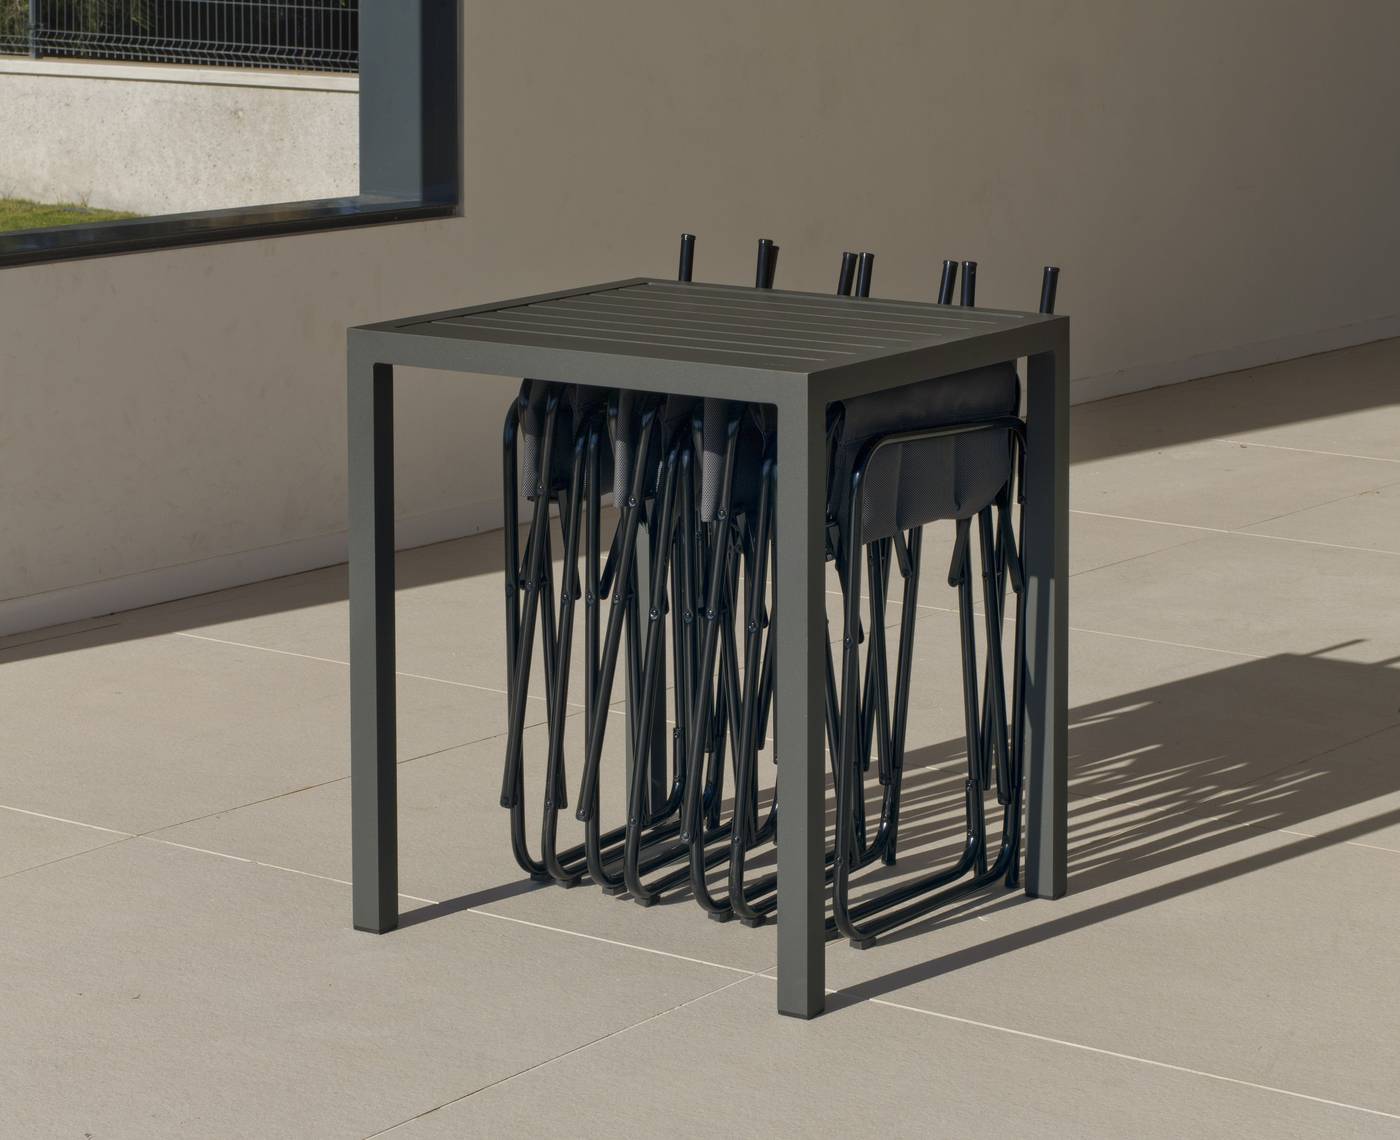 Set Aluminio Melea-Badúa 65-4 - Conjunto aluminio luxe: Mesa cuadrada 65 cm + 4 sillones plegables. Disponible en color blanco o antracita.